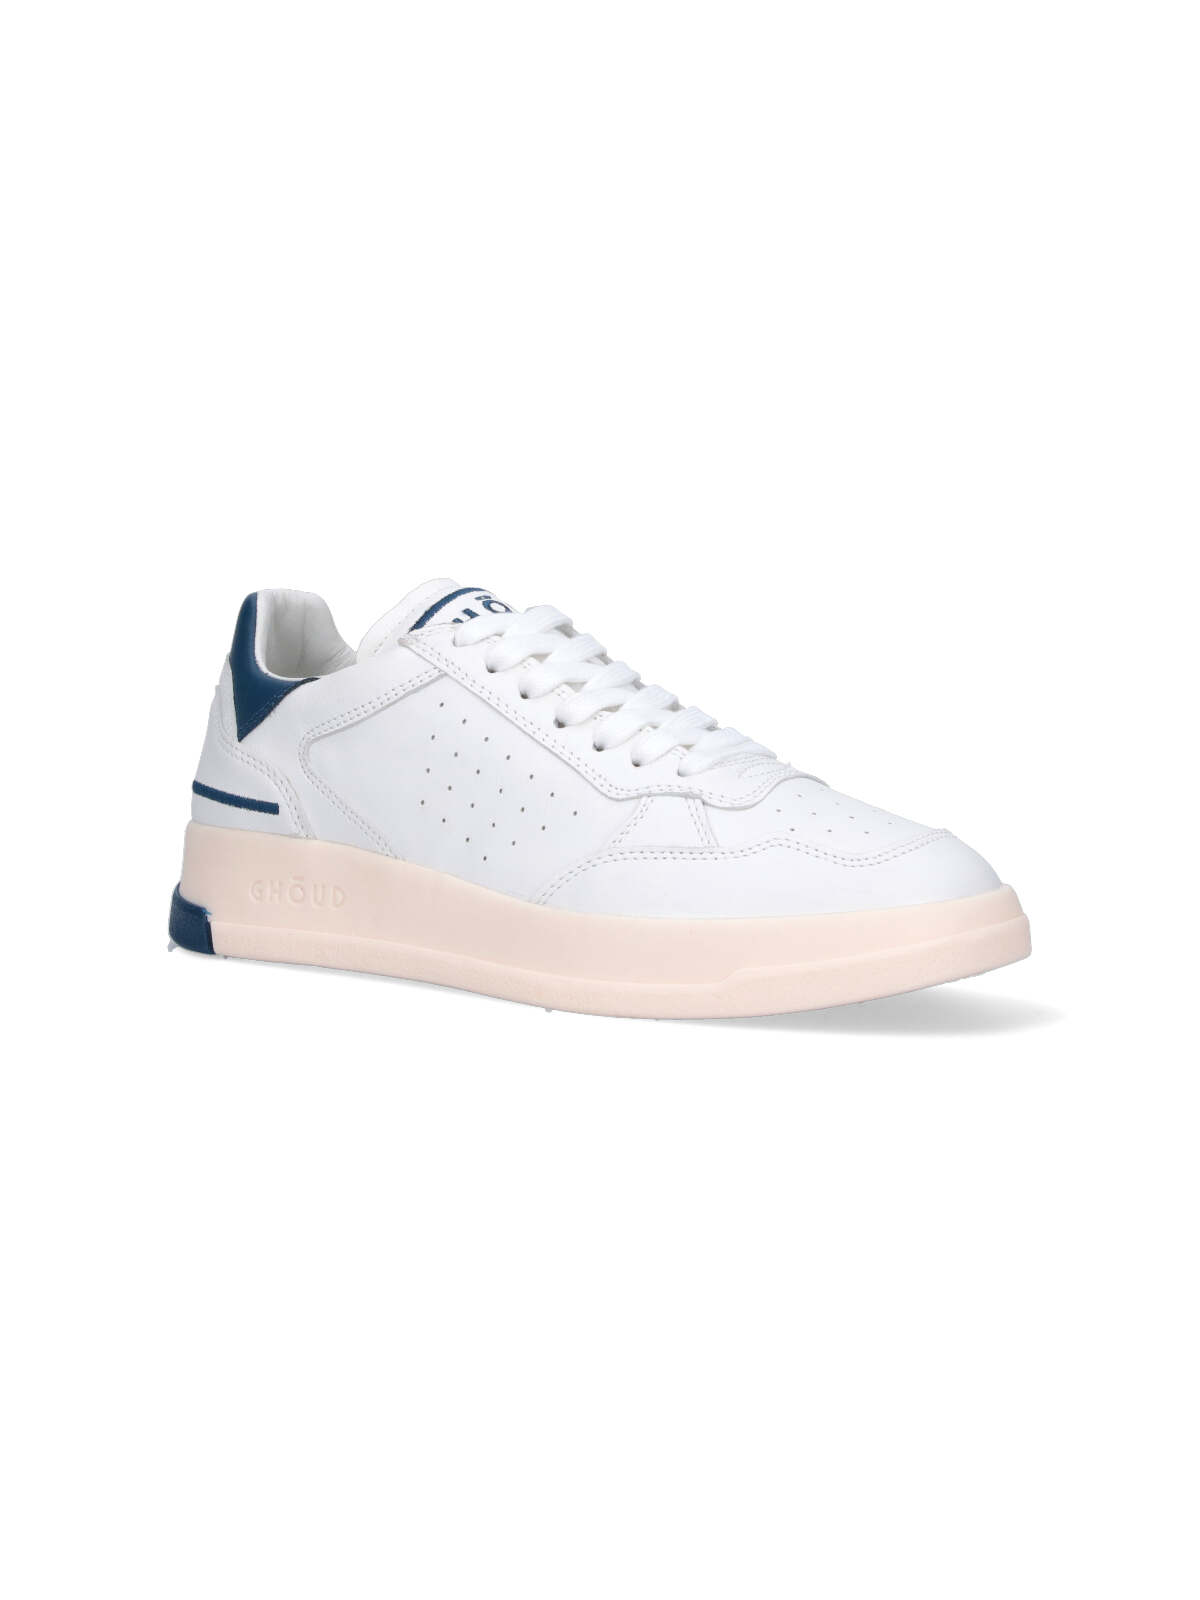 Shop Ghoud Tweener Low Sneakers In White